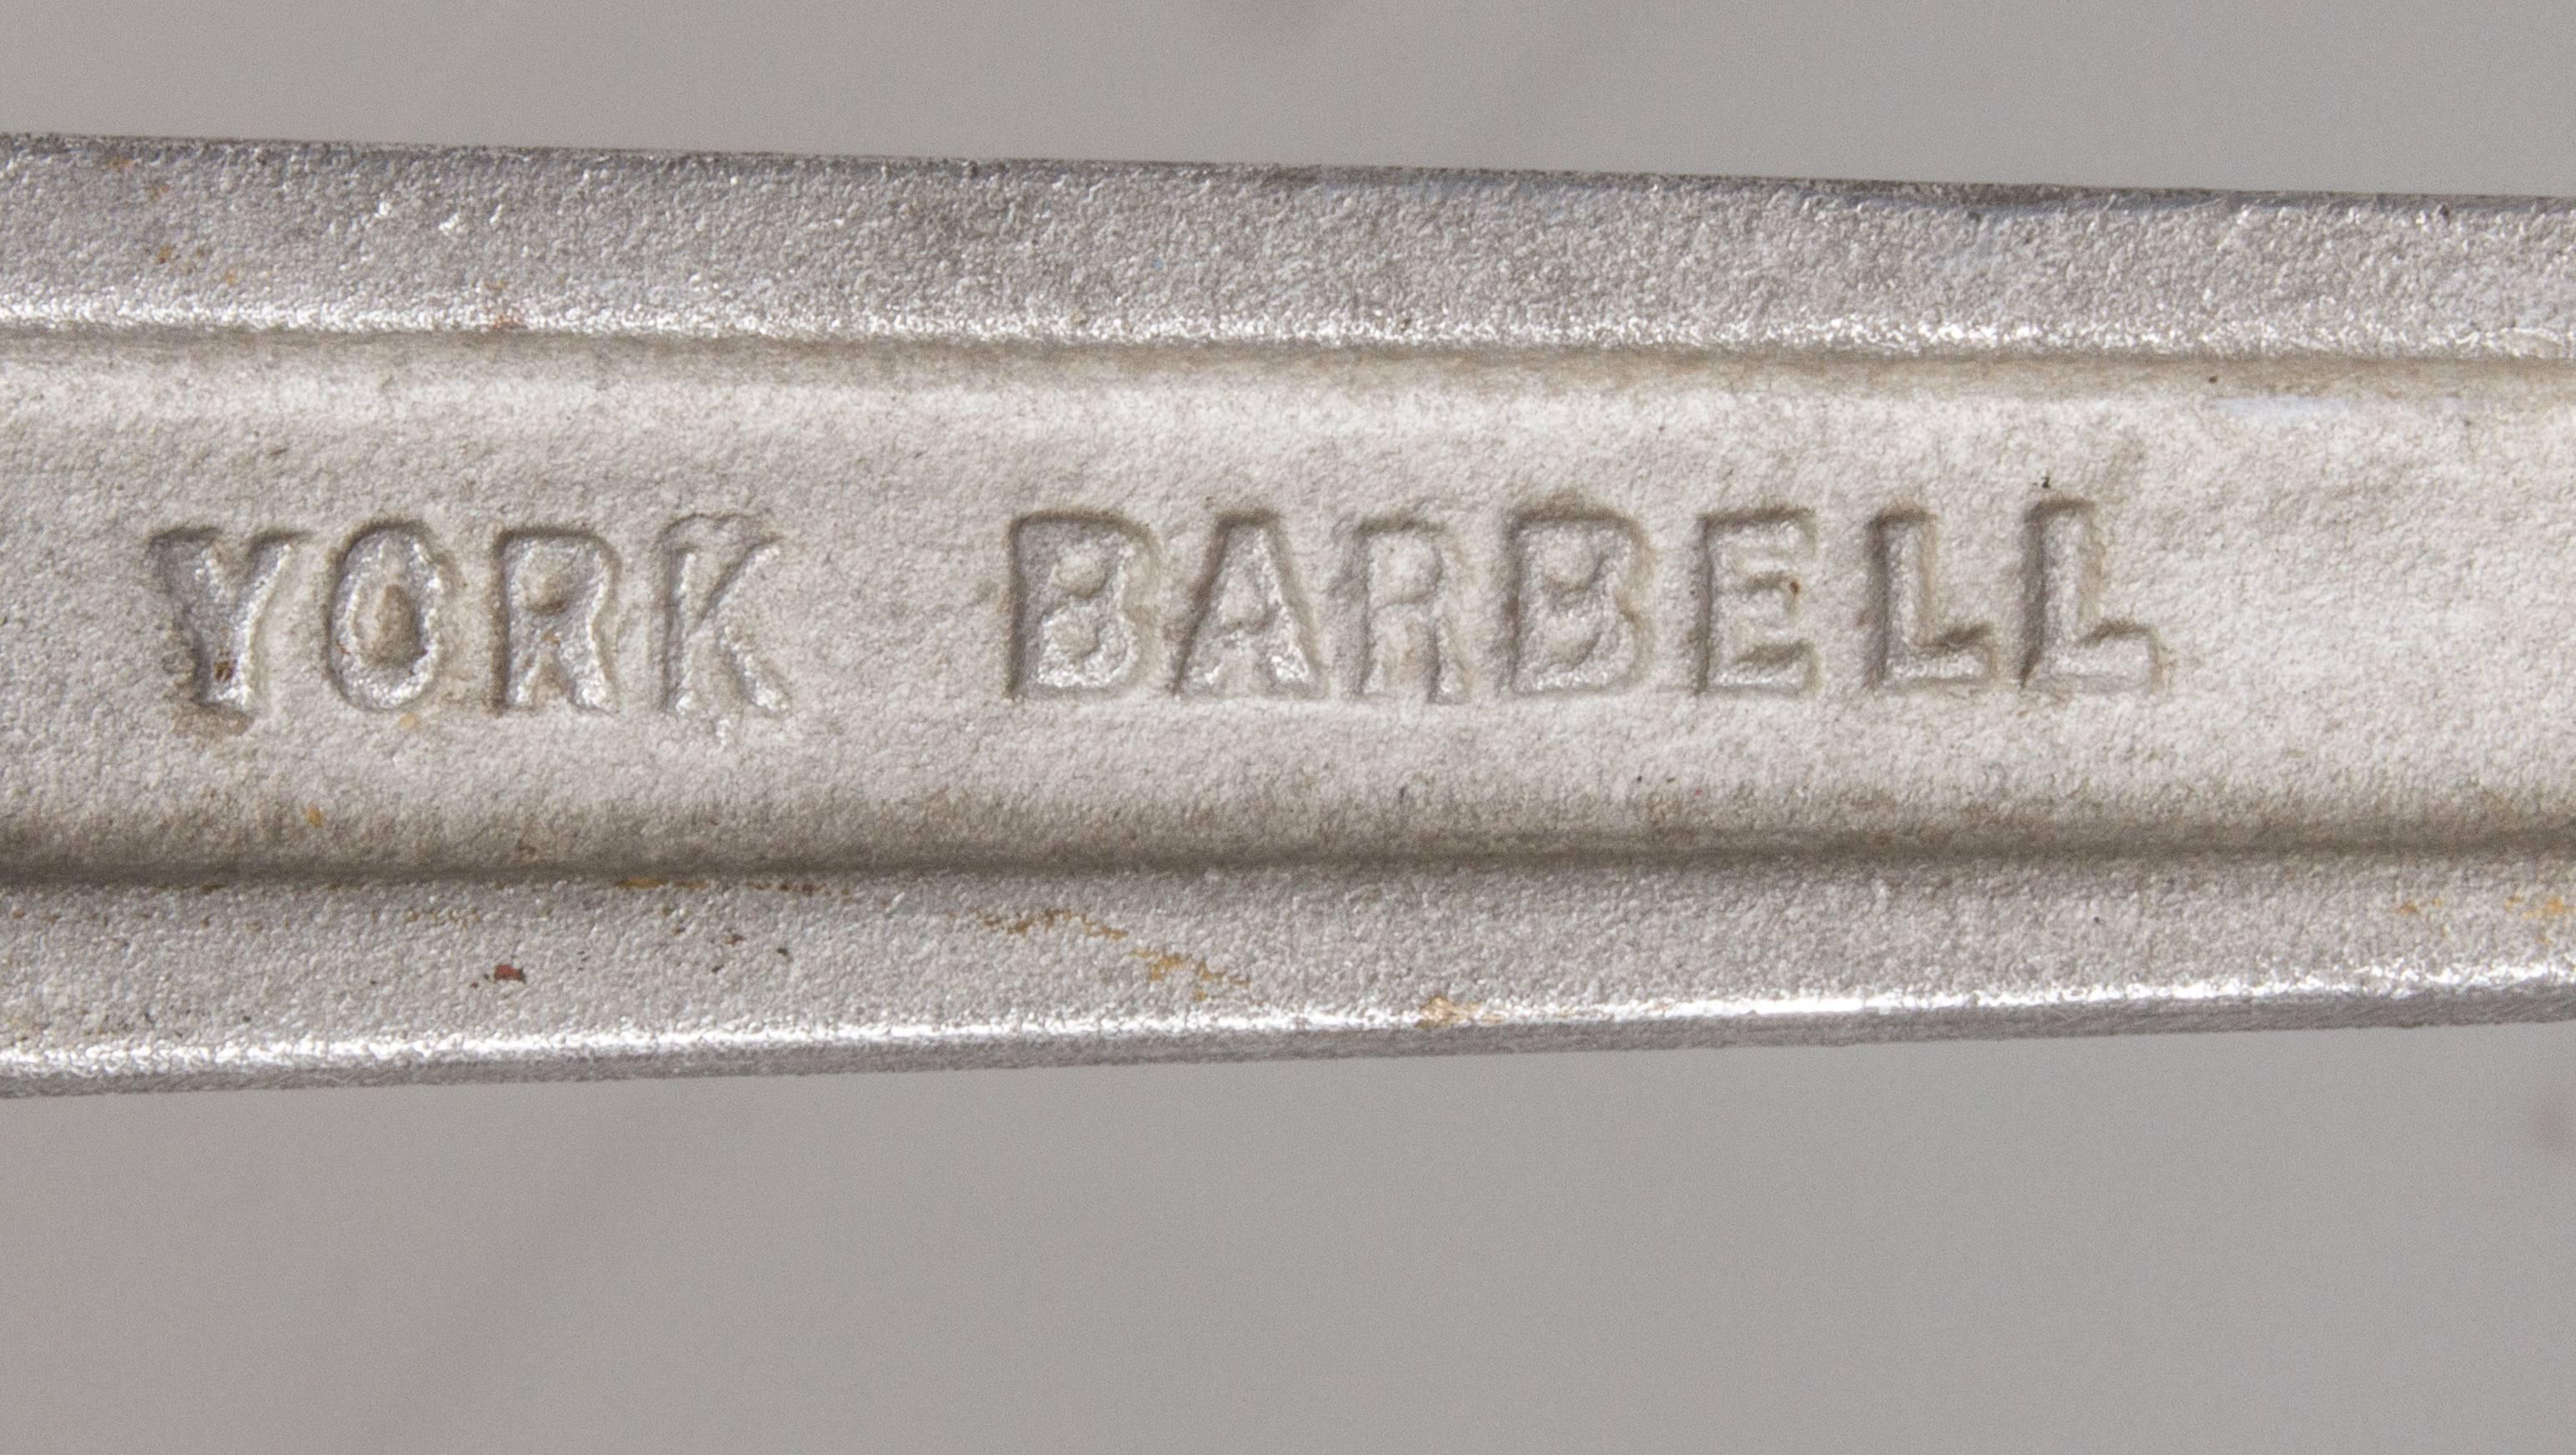 Mid-20th Century York Krusher Barbell Excerciser For Sale